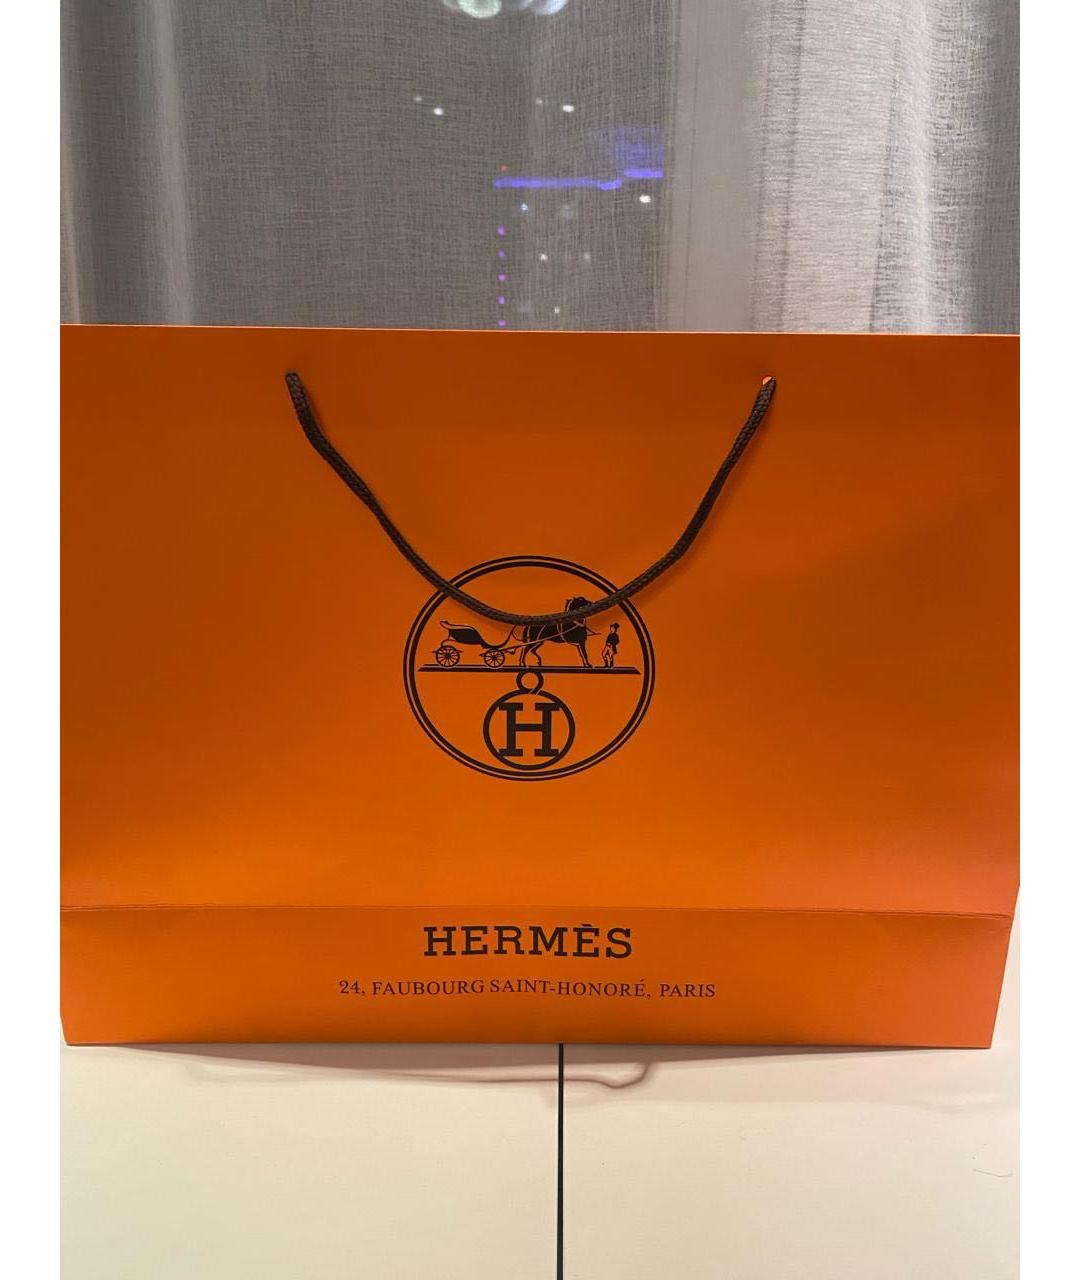 HERMES PRE-OWNED Черный кожаный портфель, фото 5